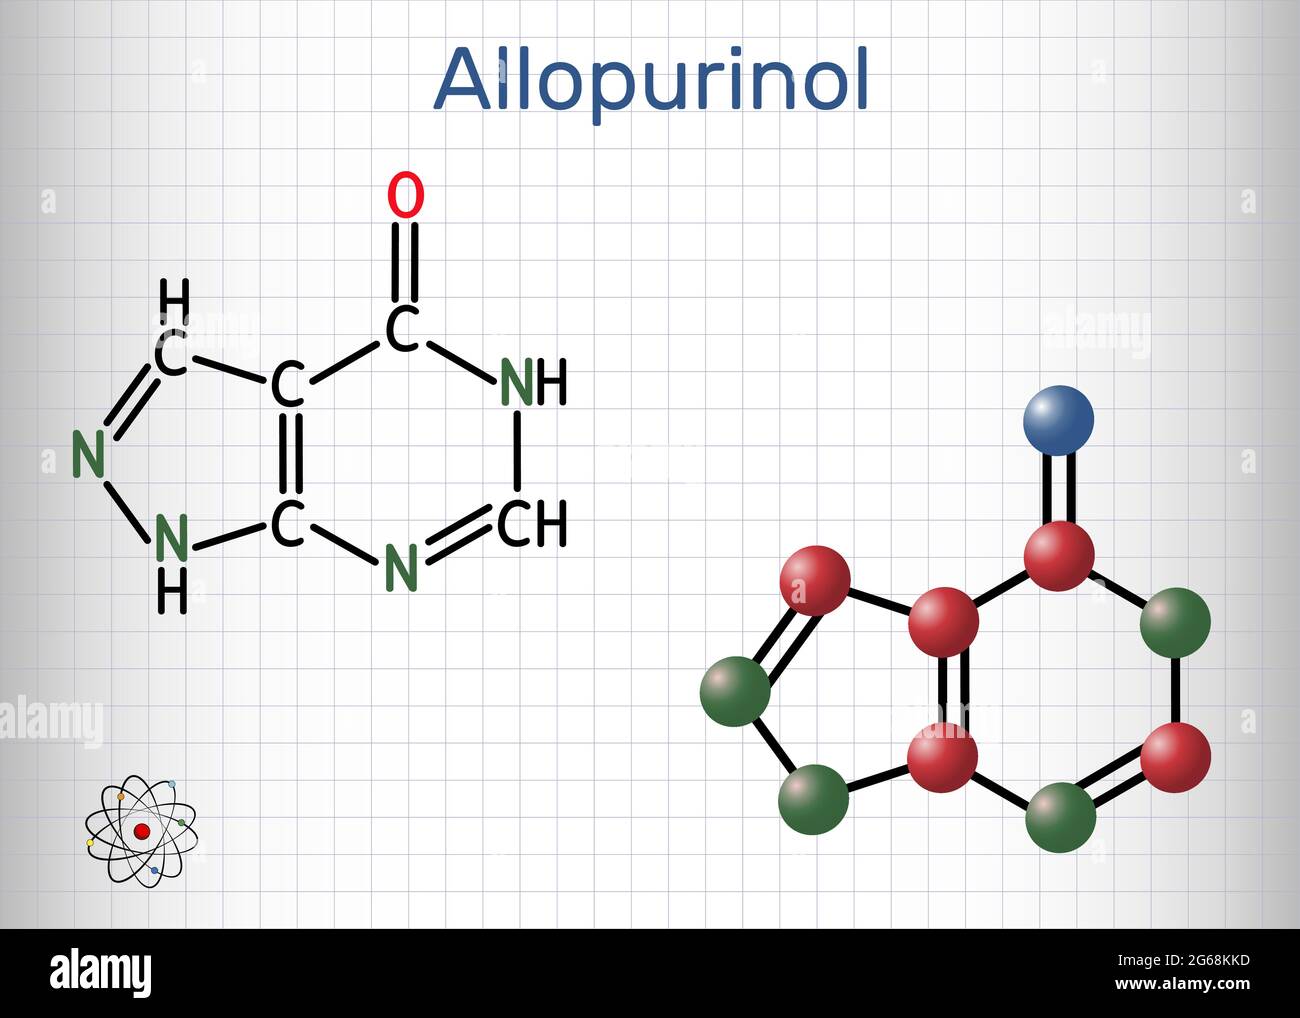 Allopurinol-Molekül. Das Medikament ist ein Xanthinoxidase-Hemmer, der verwendet wird, um hohe Harnsäurespiegel im Blut zu senken. Blatt Papier in einem Käfig. Vektorgrafik Stock Vektor